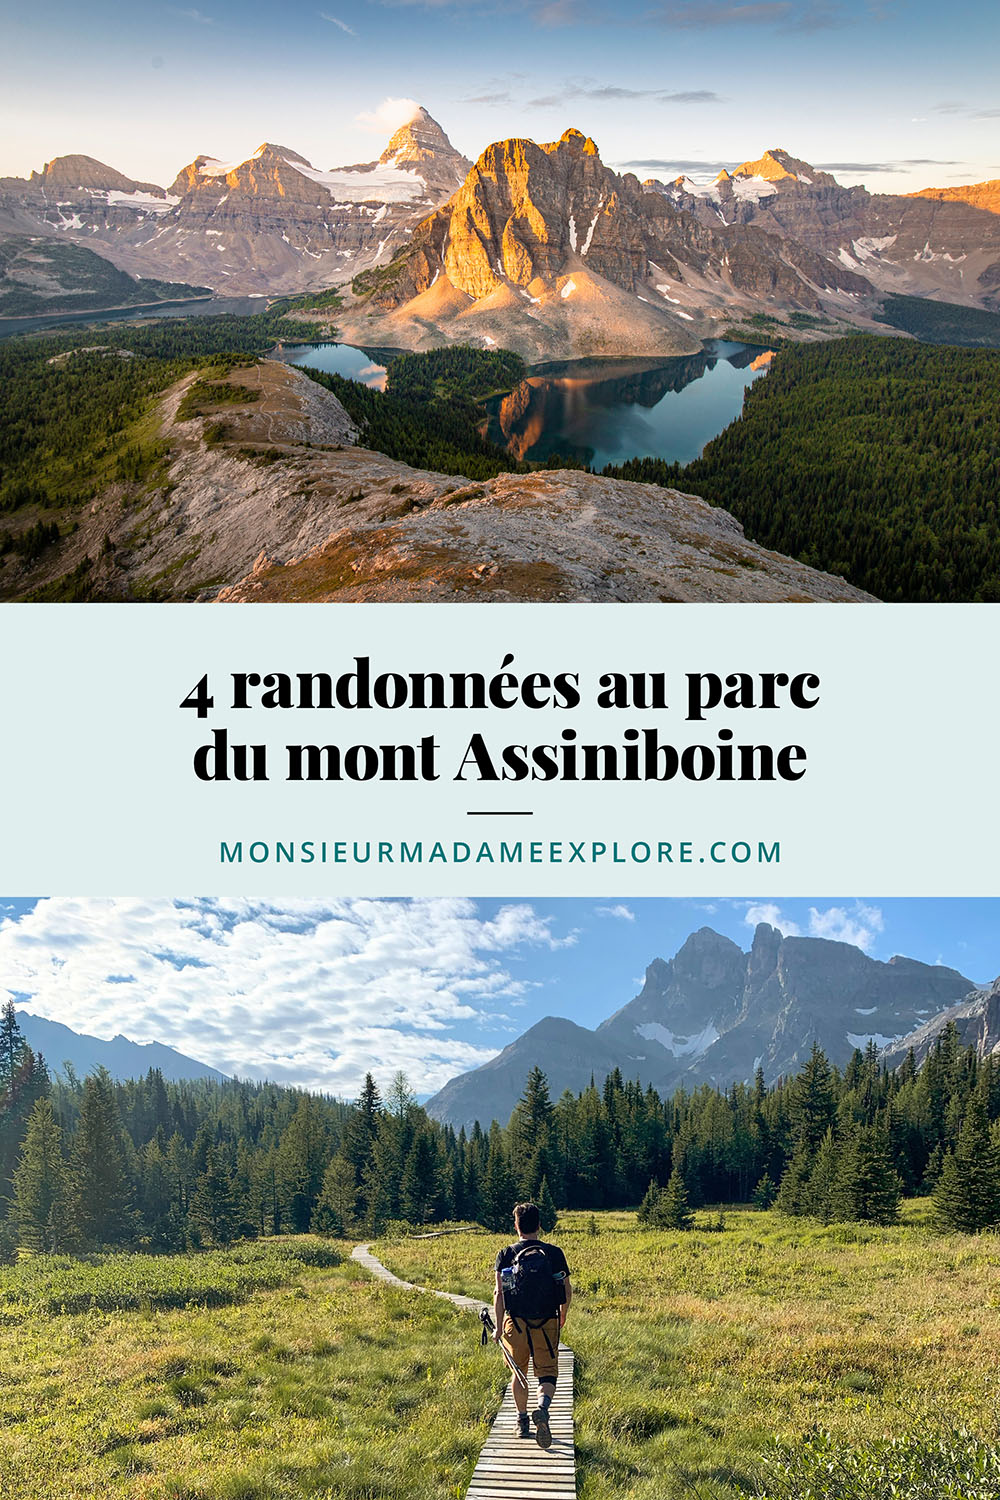 4 randonnées au parc du mont Assiniboine, Monsieur+Madame Explore, Blogue de voyage, Rocheuses canadiennes, Colombie-Britannique, Canada / 4 hikes to do in Mount Assiniboine, Canadian Rockies, BC, Canada